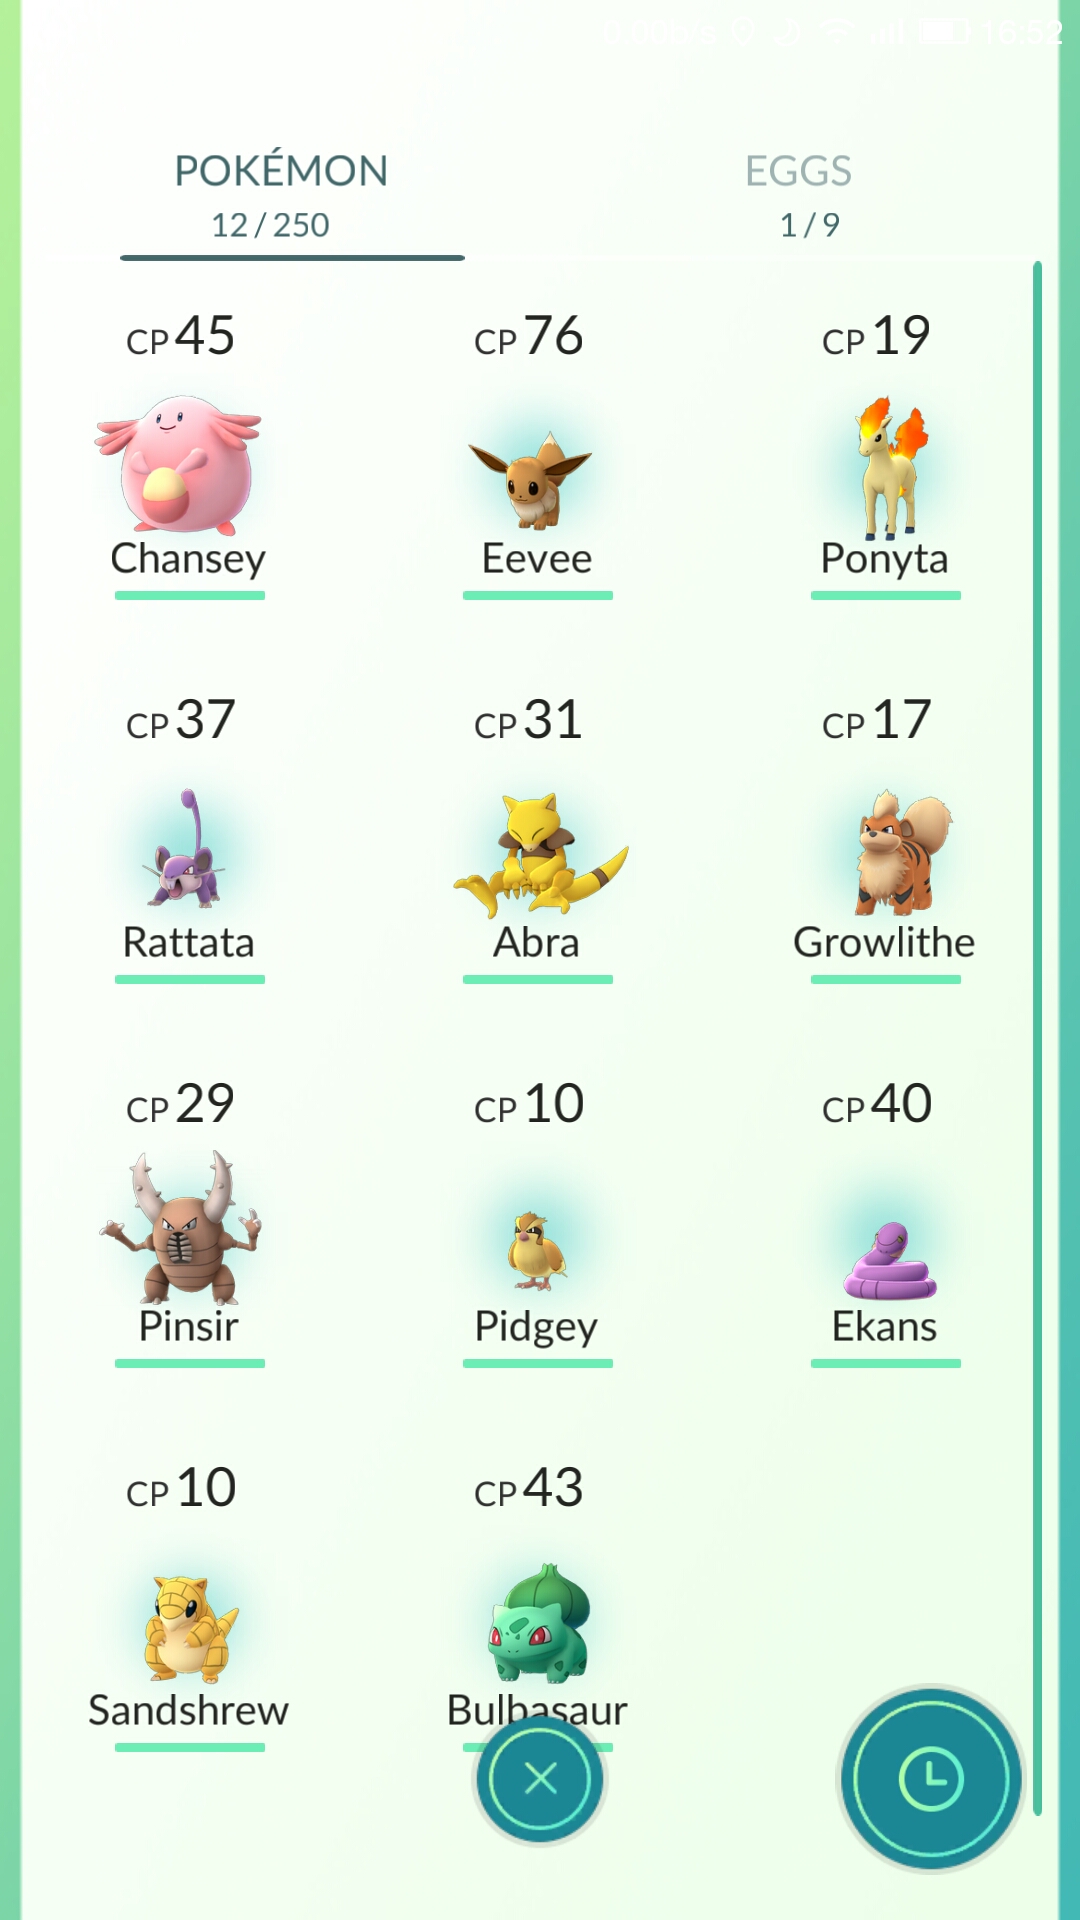 Tại sao bộ đếm Pokémon lại hiển thị nhiều hơn 1 Pokémon so với số Pokémon thực tế mình có?